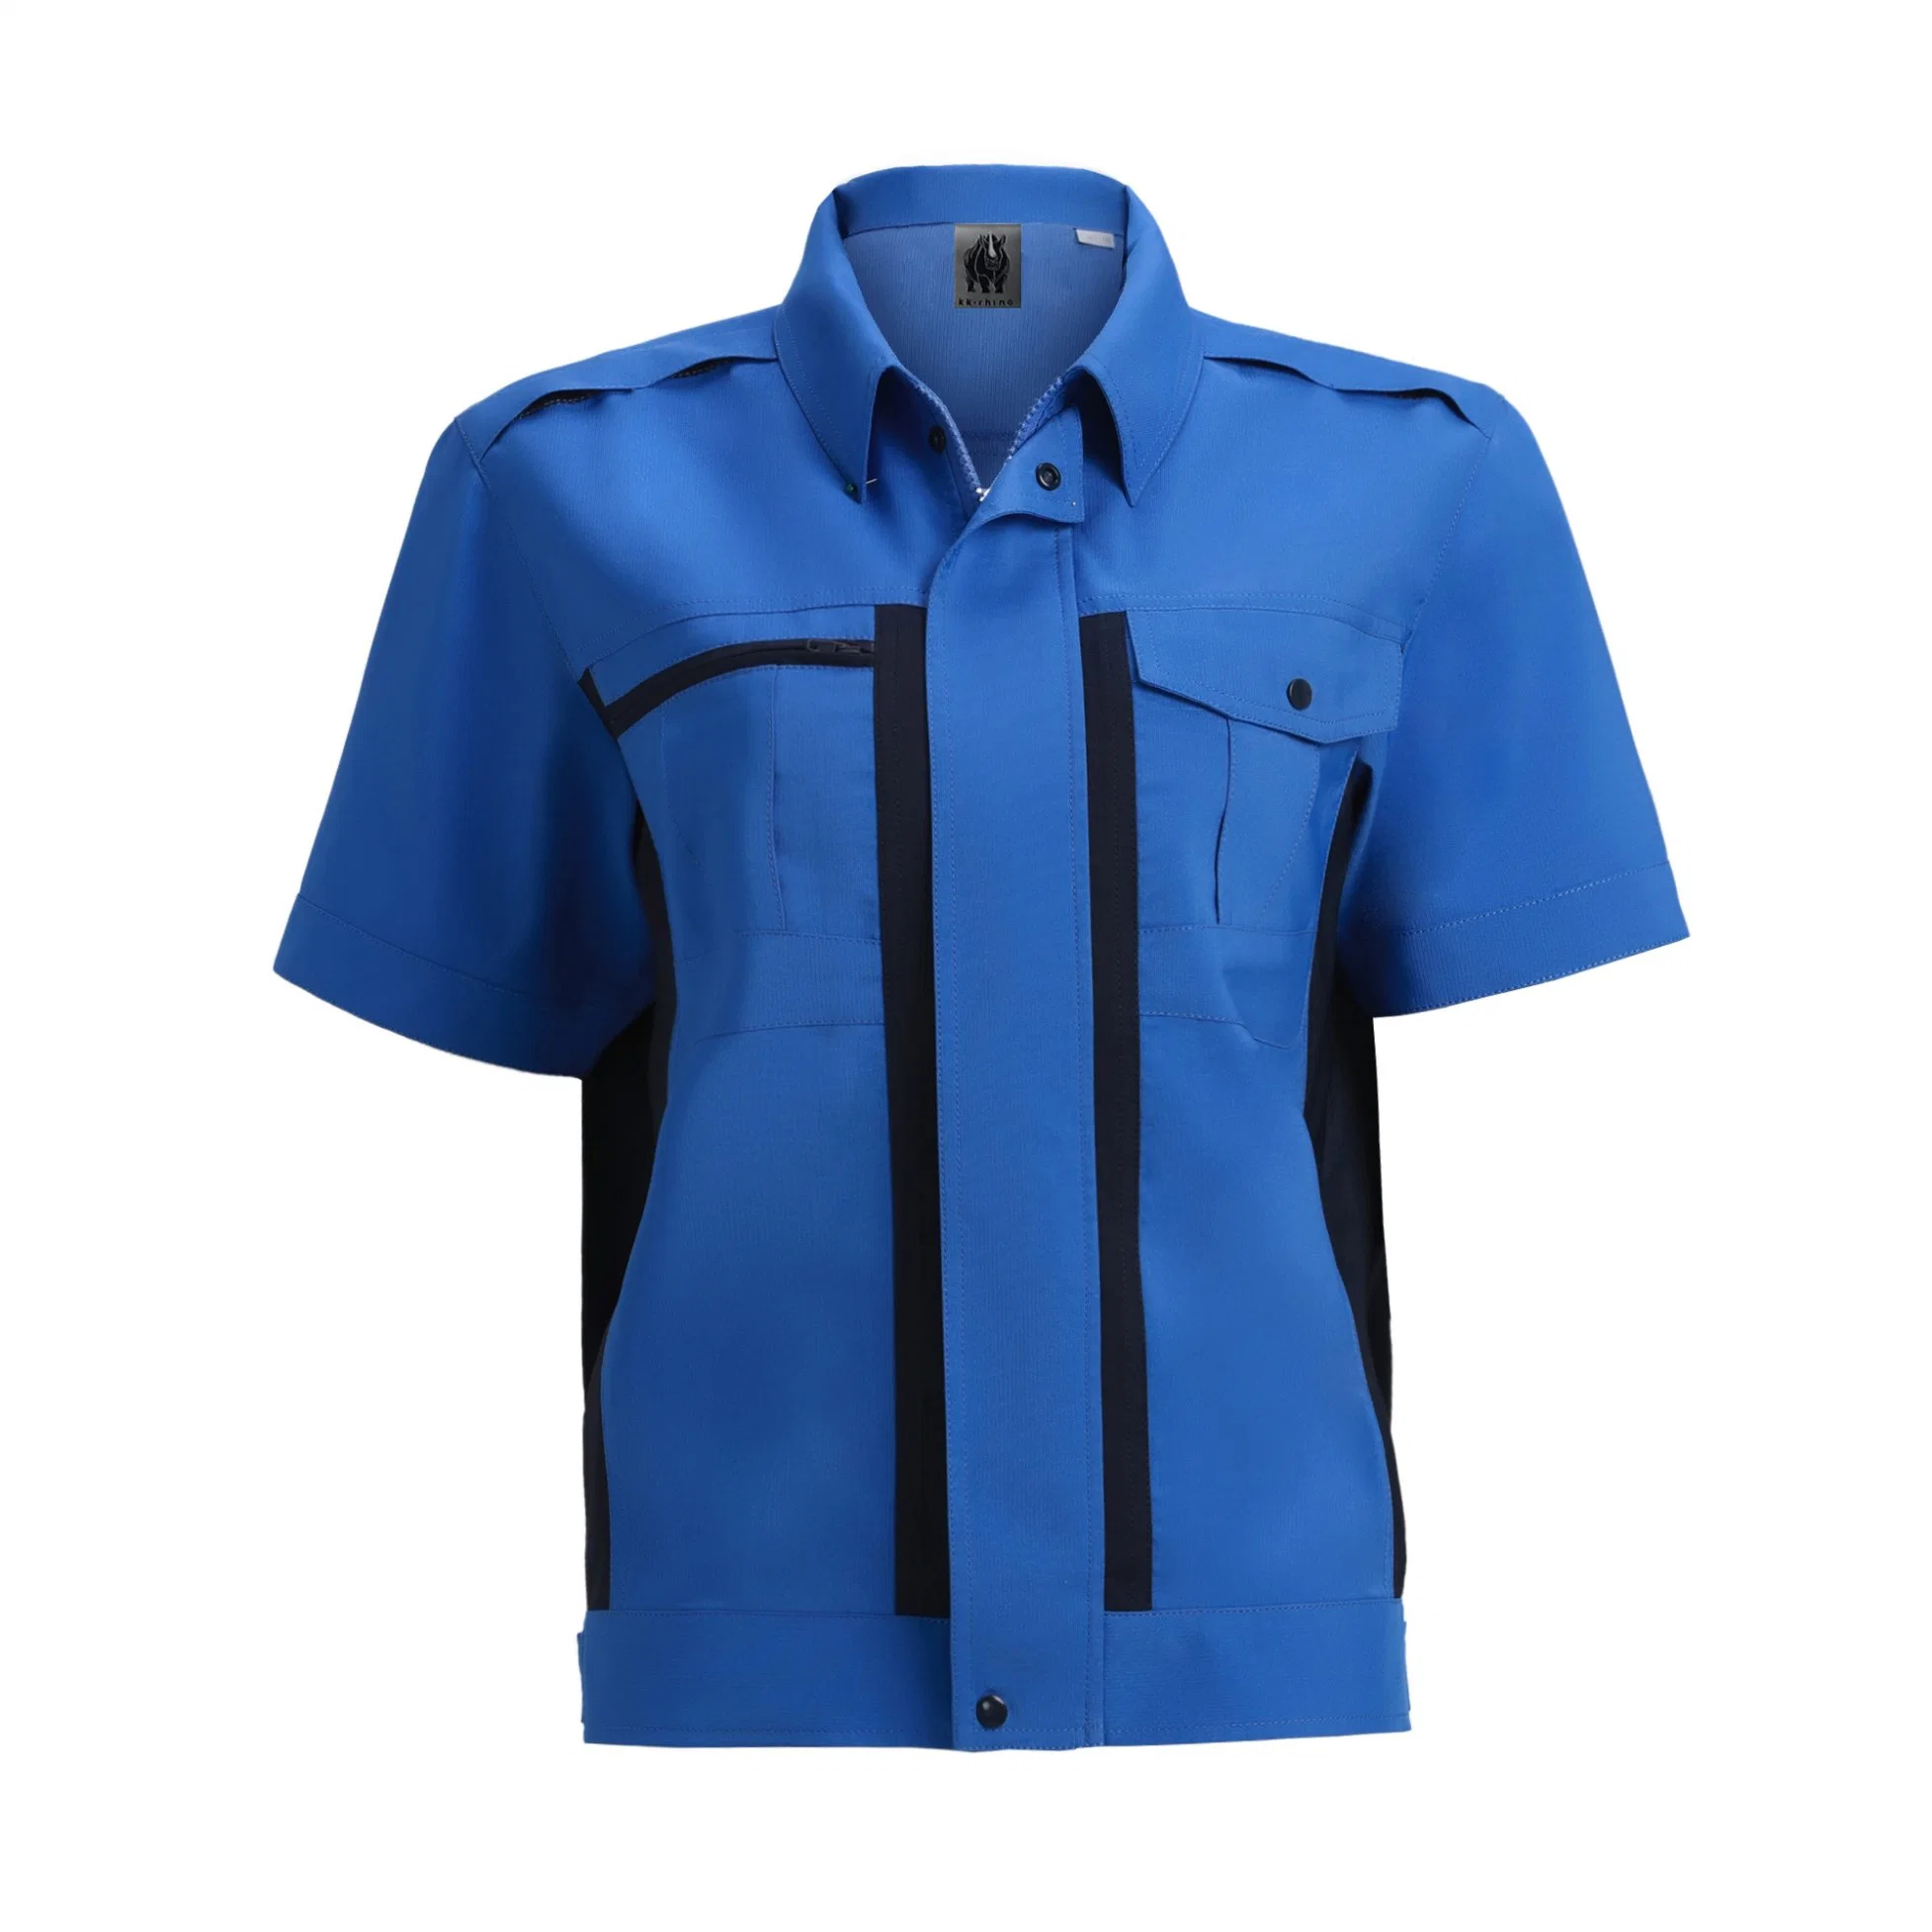 Trabalho Moisture-Wicking anti desgaste uniforme estática camisas personalizadas roupas de trabalho de Verão ao ar livre